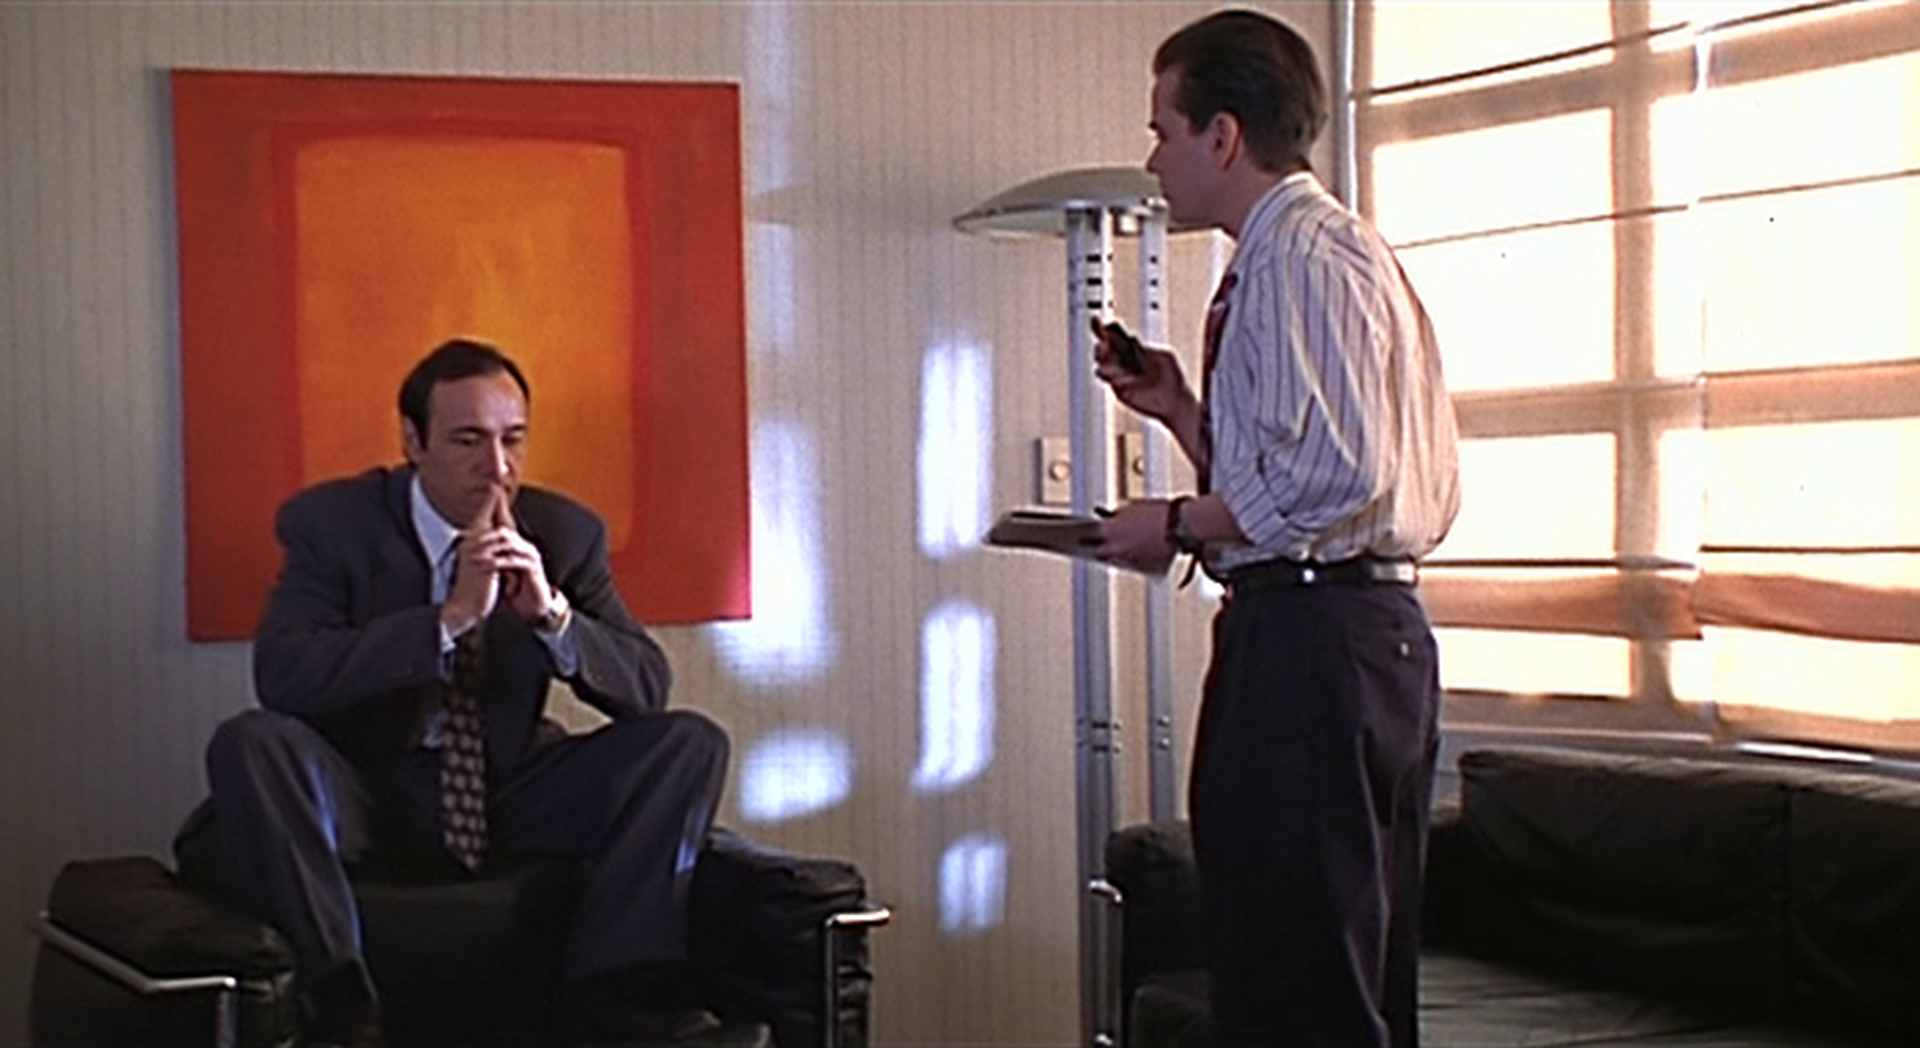 Spärlich ausgeleuchtetes Büro: Kevin Spacey hockt in nachdenklicher Pose auf einem schwarzen Manhattan-Sessel vor einem Rothko-ähnlichen Gemälde, vor ihm steht im Yuppie-Look Frank Whaley als junger Assistent Guy.